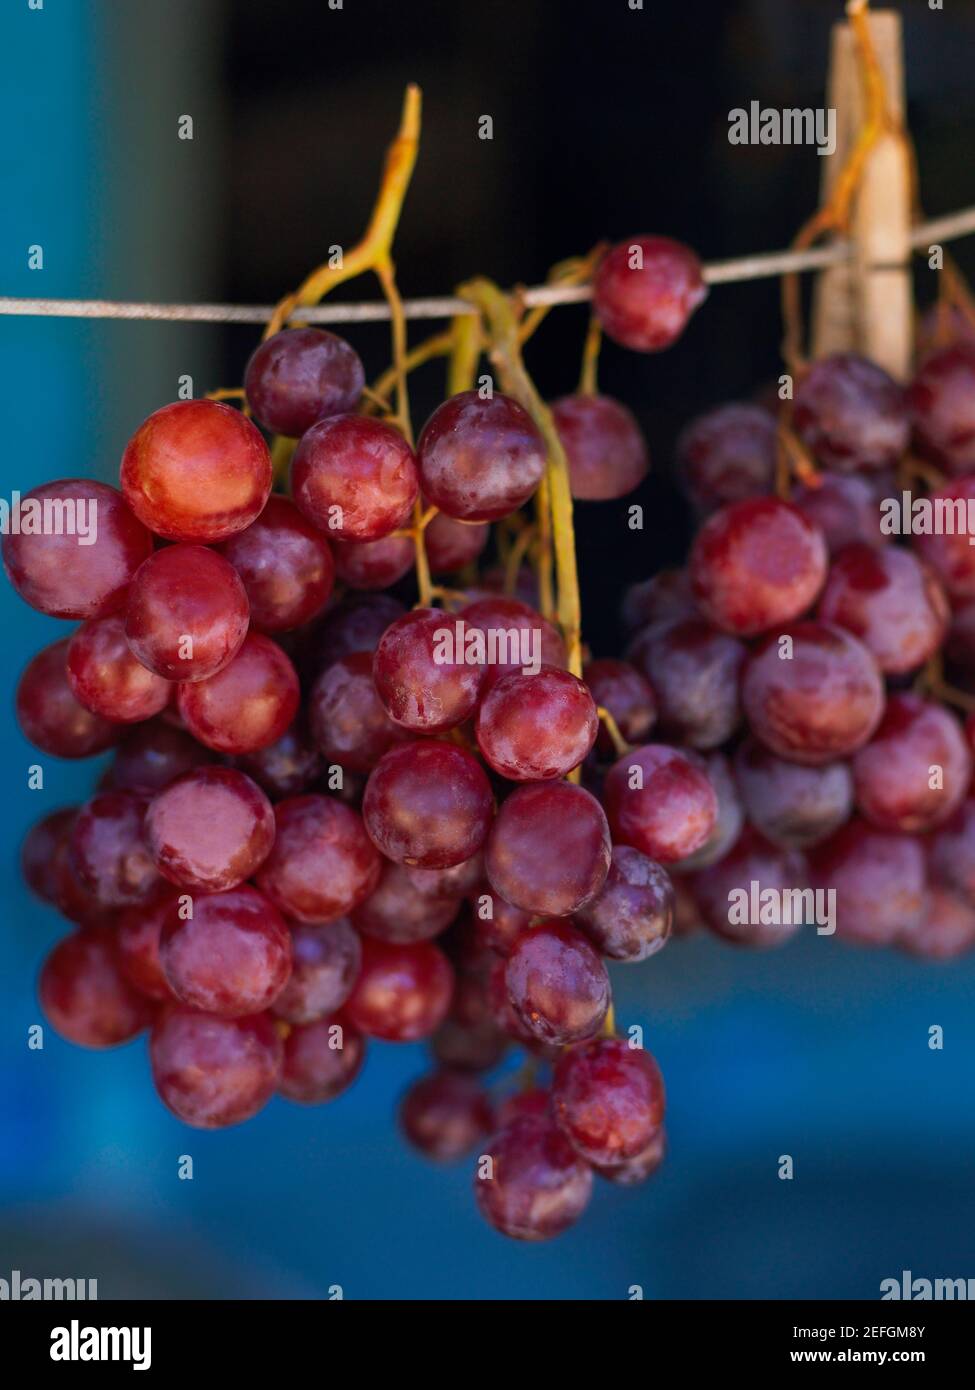 Primo piano di uve rosse appese in una bancarella di mercato, Providencia, Providencia y Santa Catalina, San Andres y Providencia Department, Colombia Foto Stock